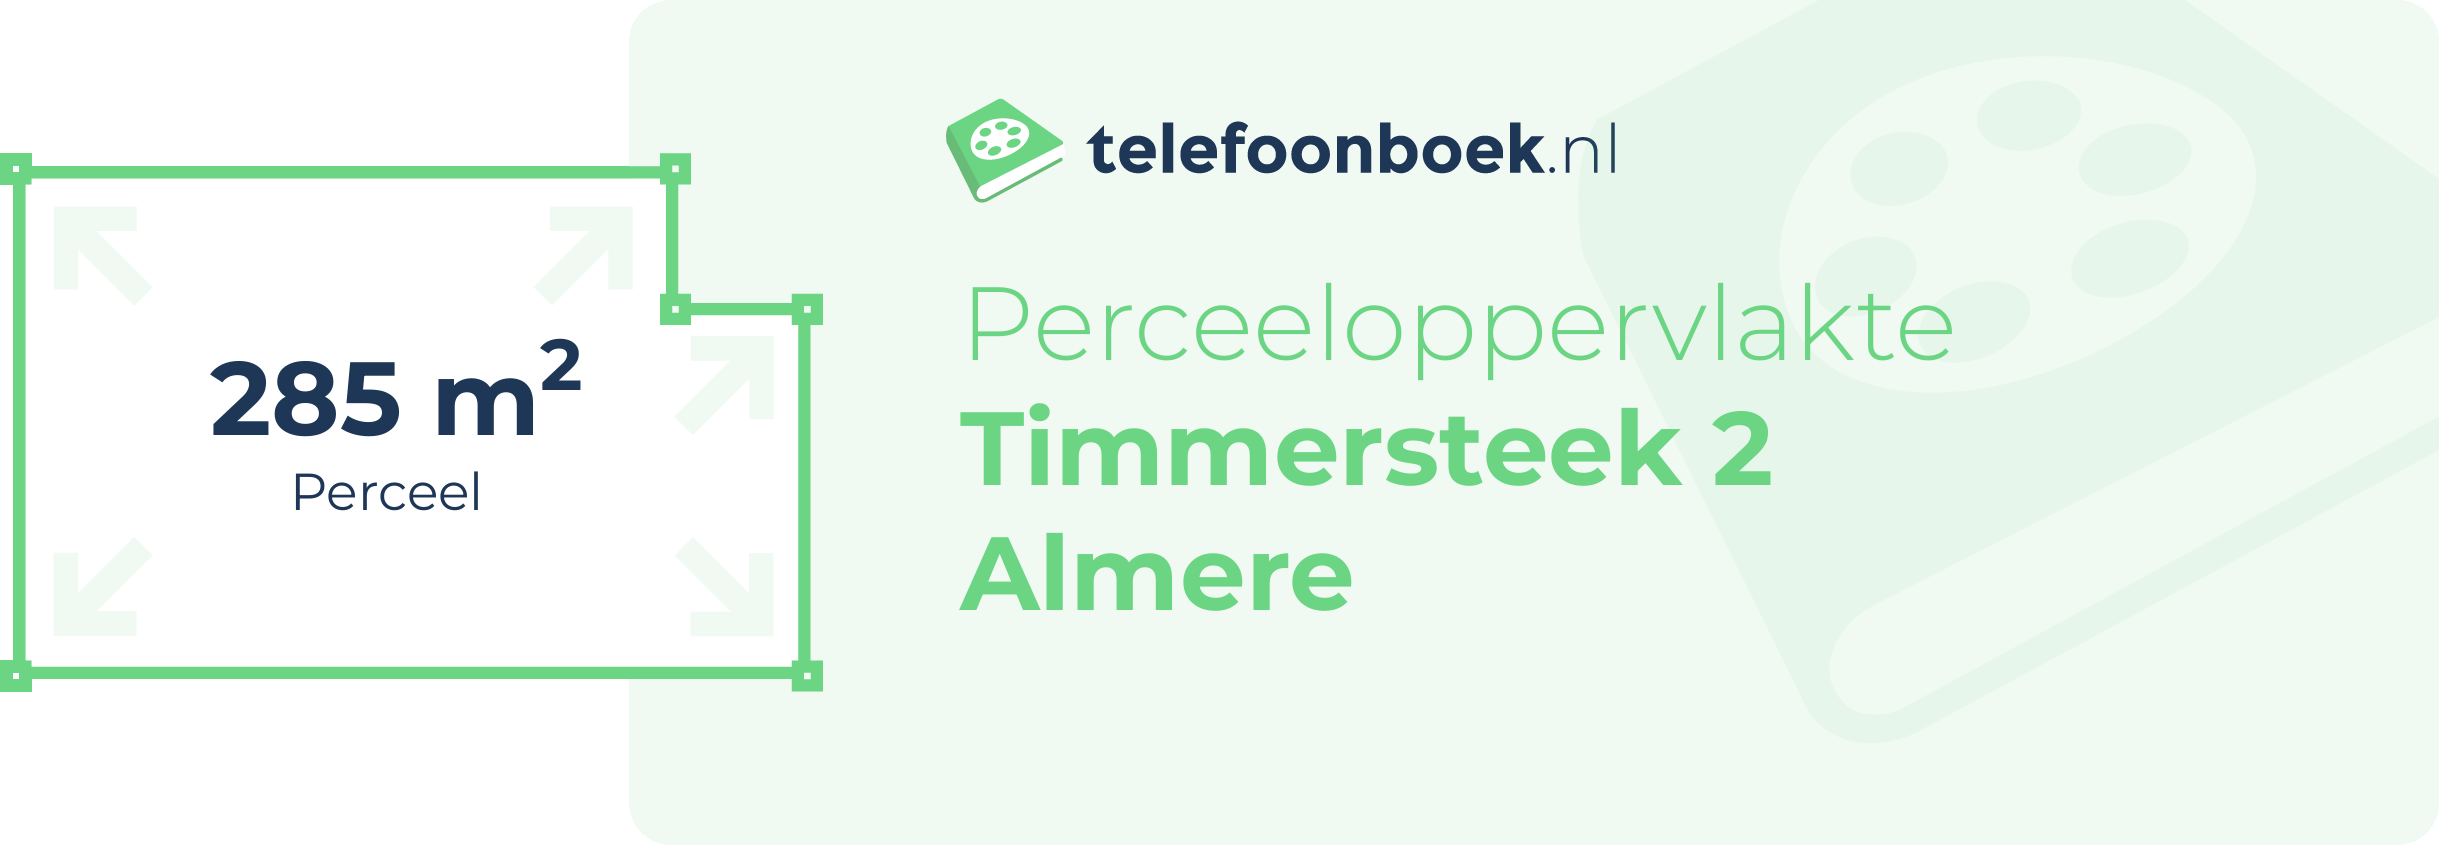 Perceeloppervlakte Timmersteek 2 Almere